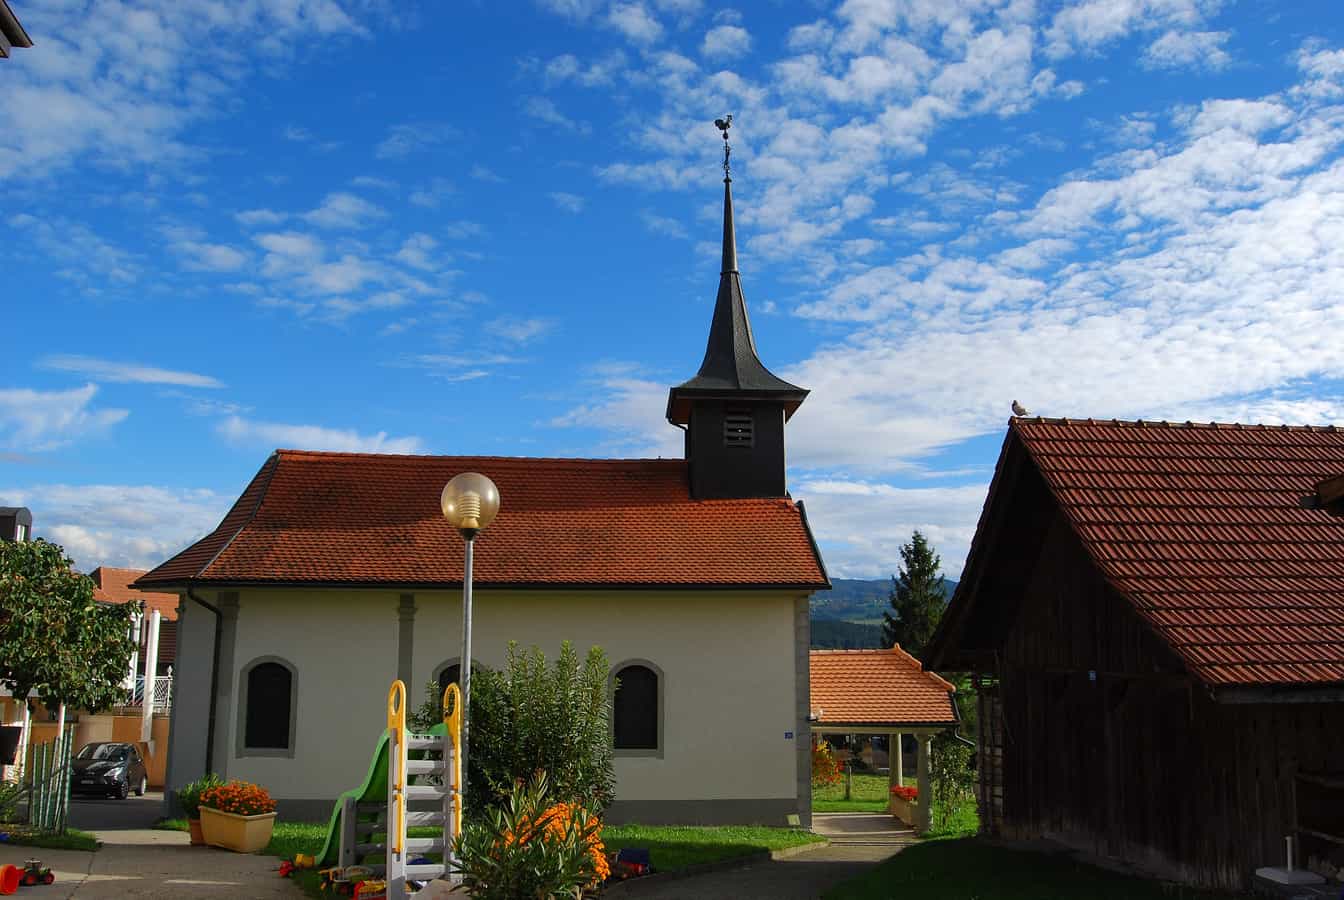 Chapelle de Chénens, canton de Fribourg, Suisse